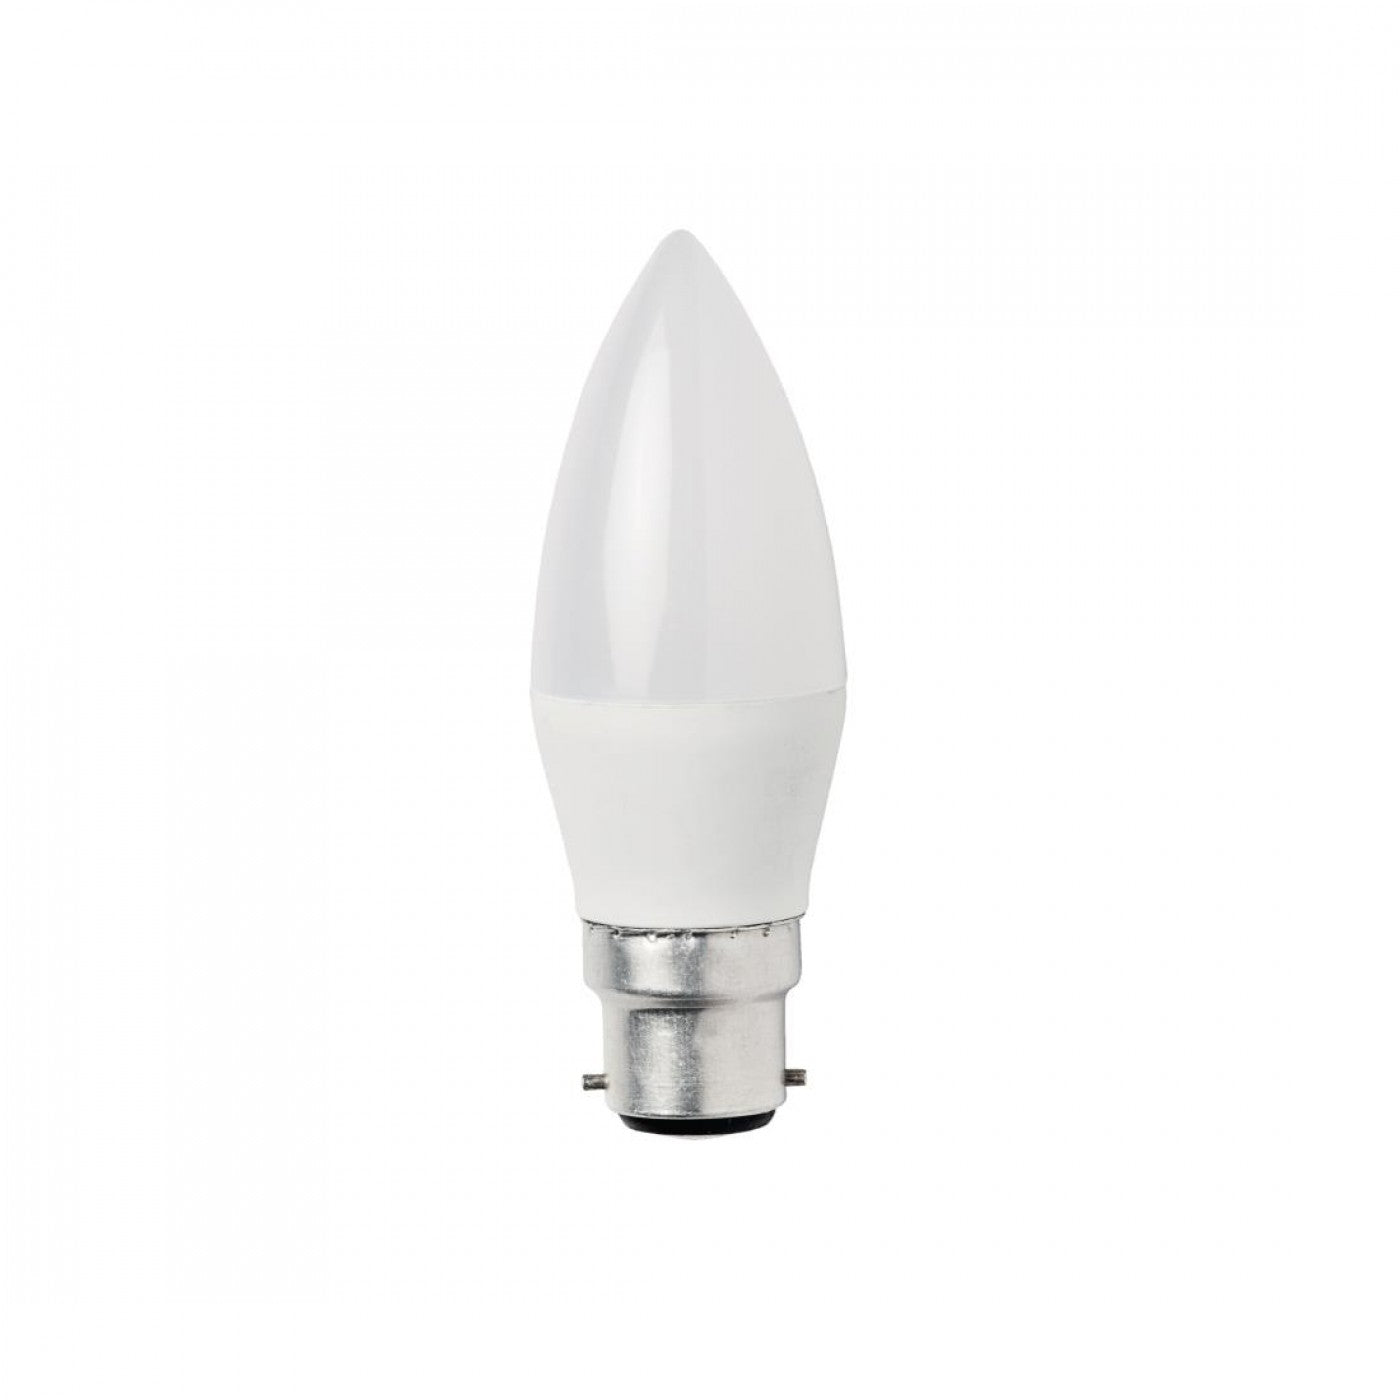 Candle LED Bulb - 6000K - 3W - B22 Base - Box of 10